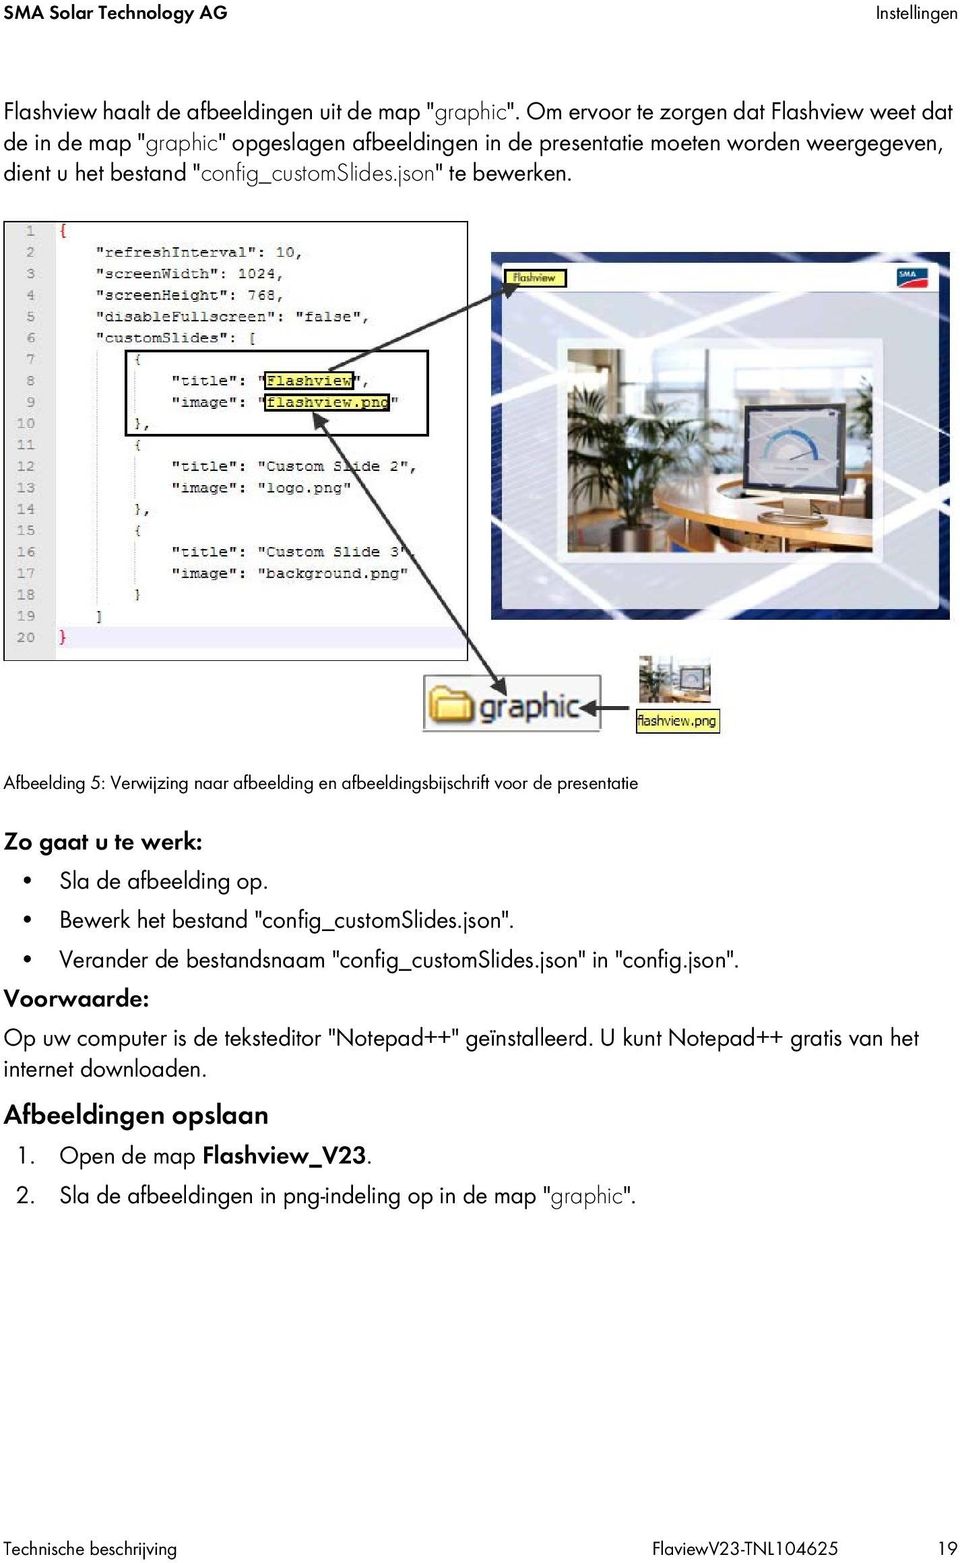 Afbeelding 5: Verwijzing naar afbeelding en afbeeldingsbijschrift voor de presentatie Zo gaat u te werk: Sla de afbeelding op. Bewerk het bestand "config_customslides.json".